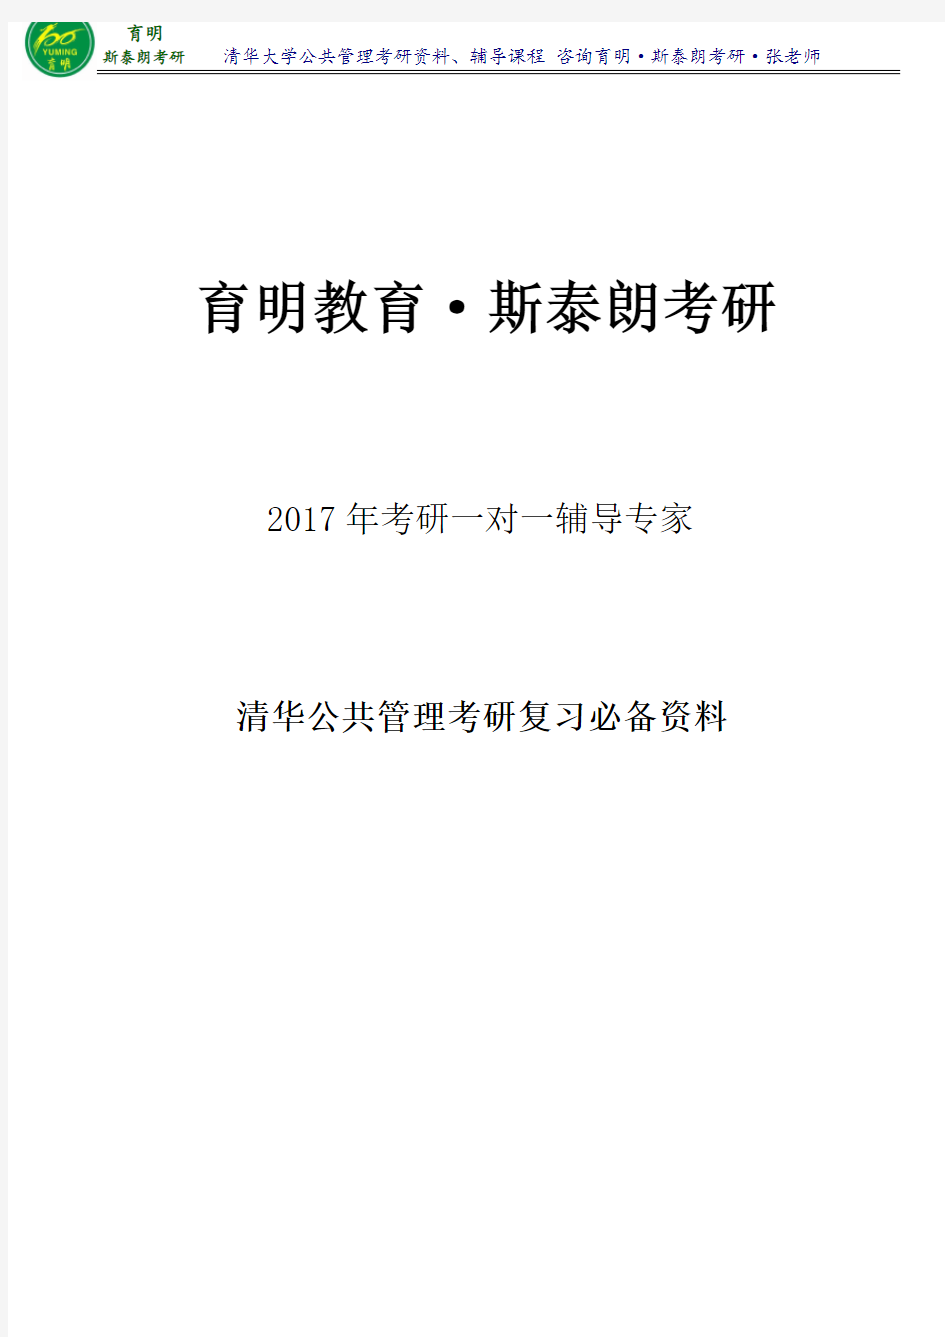 2017年清华公共管理斯塔林《公共部门管理》考研笔记整理3育明·斯泰朗考研考博